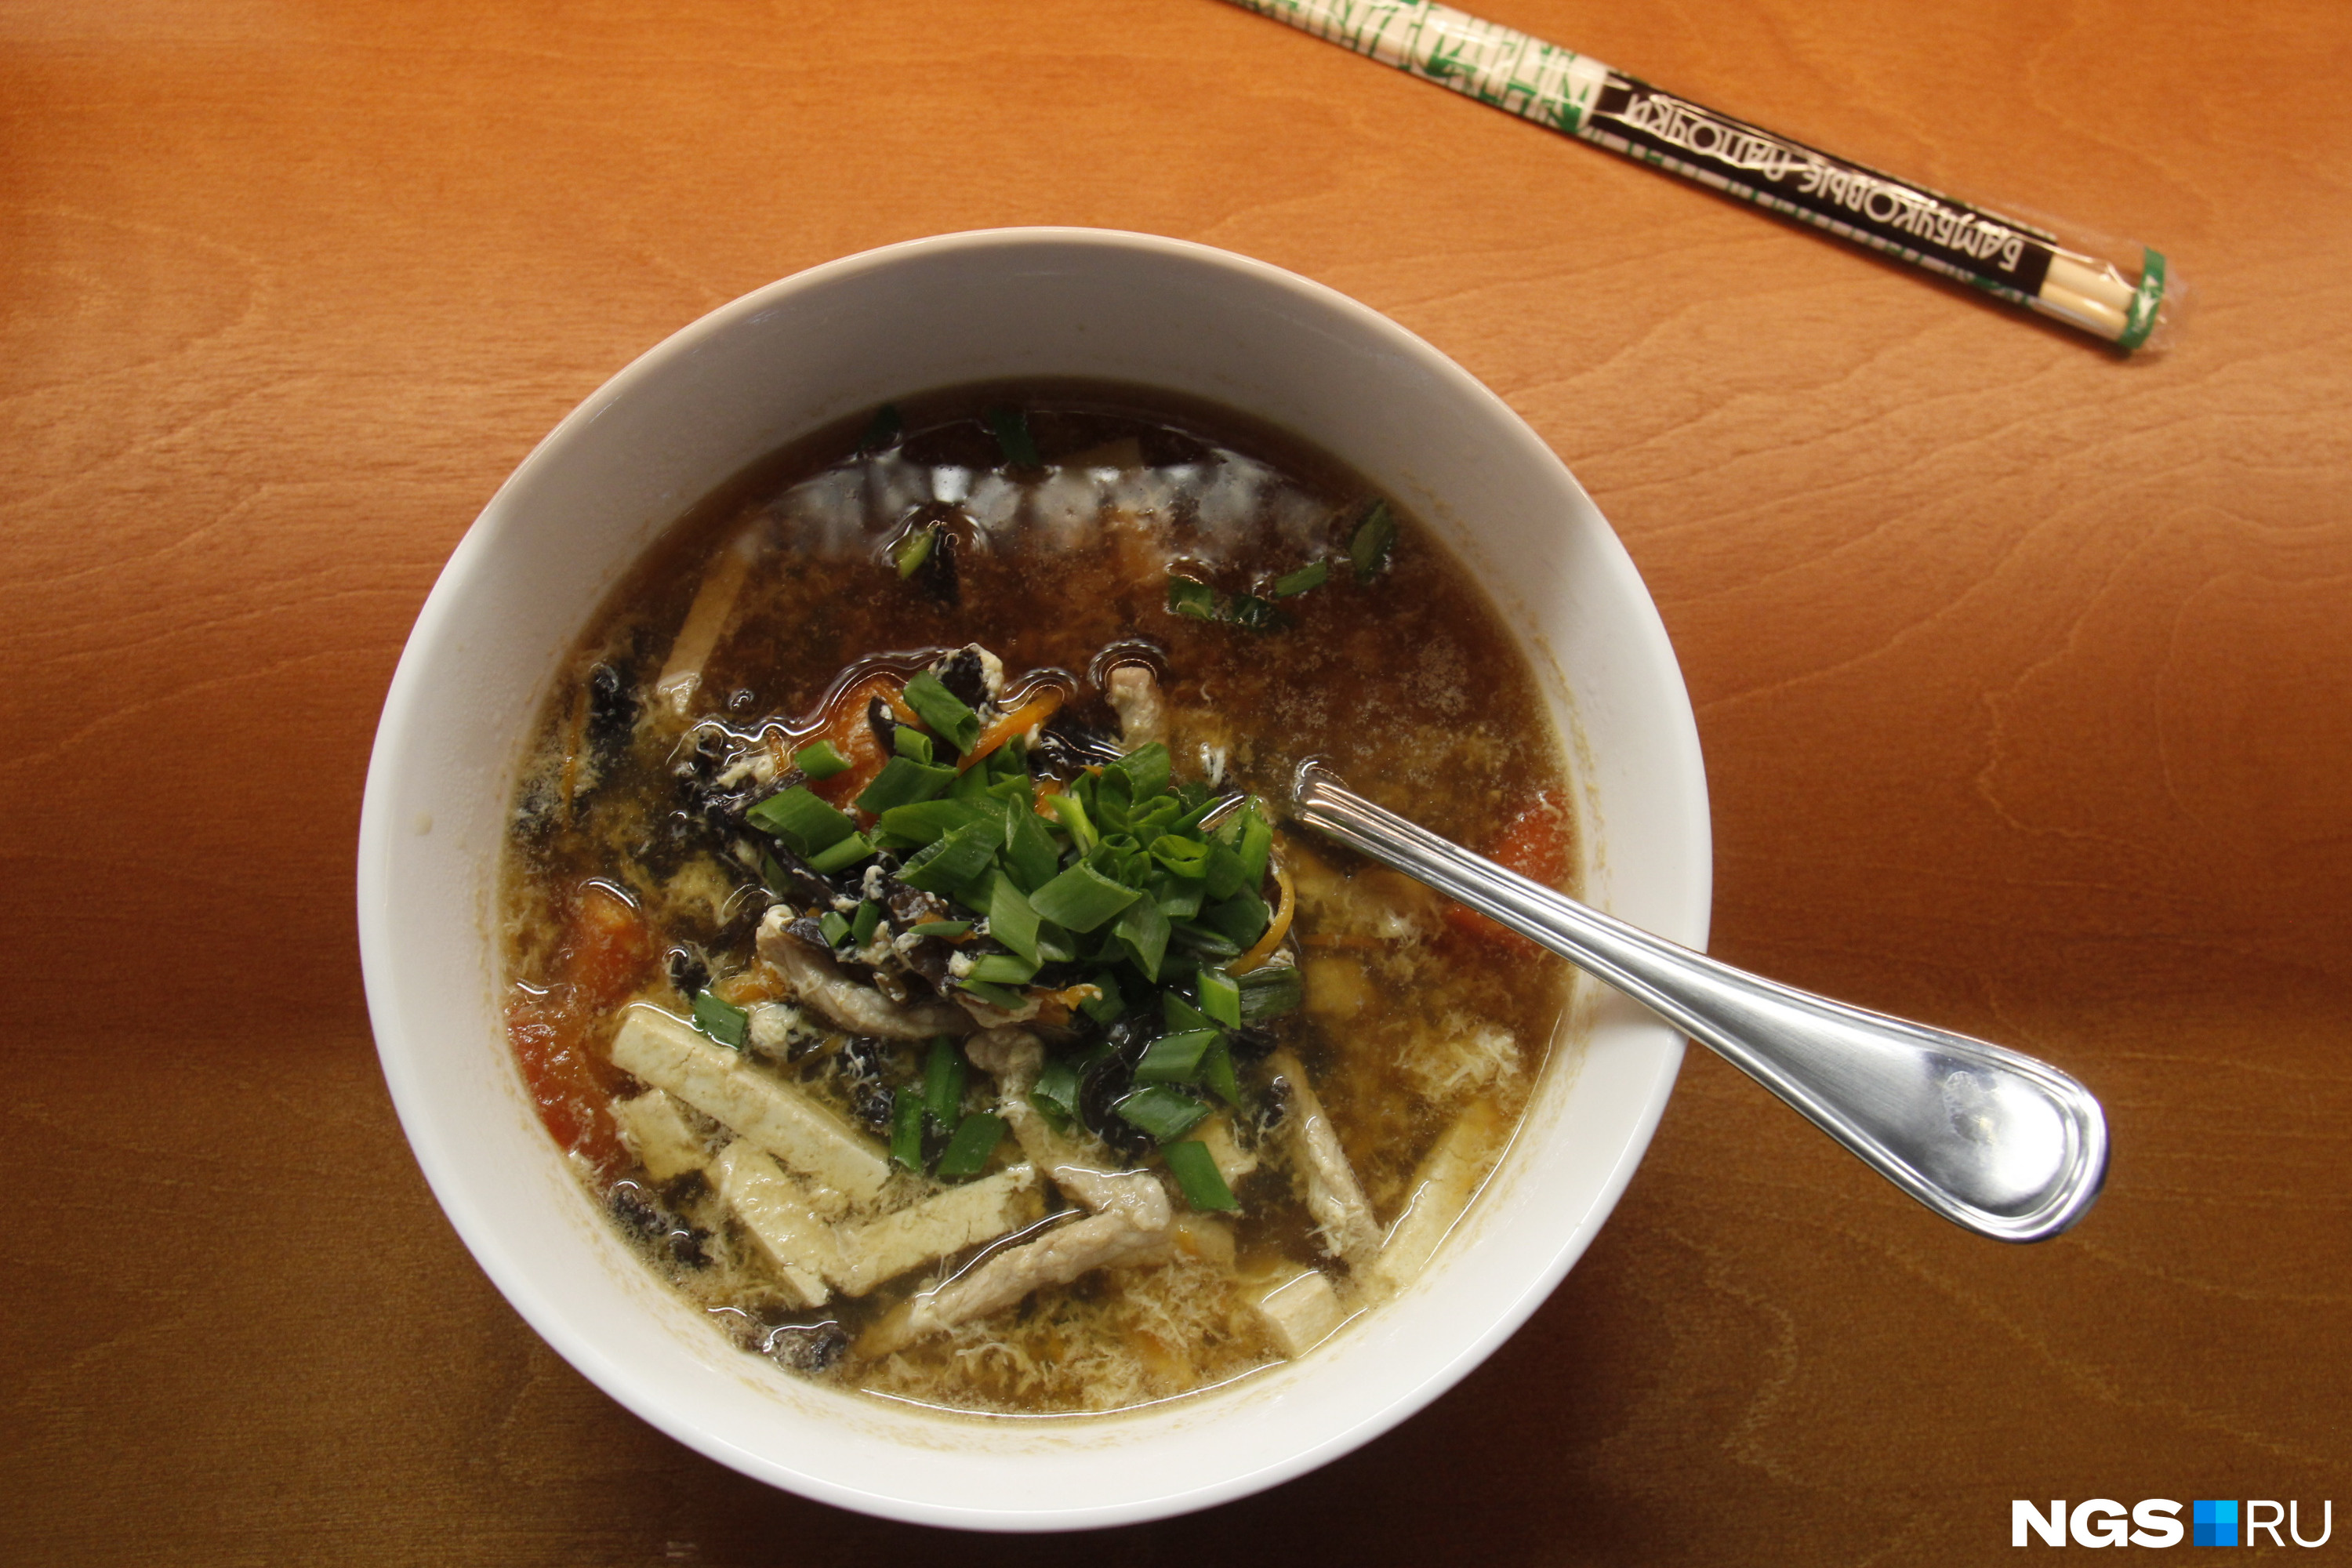 Остро-кислый суп с тофу и древесными грибами (190 рублей)